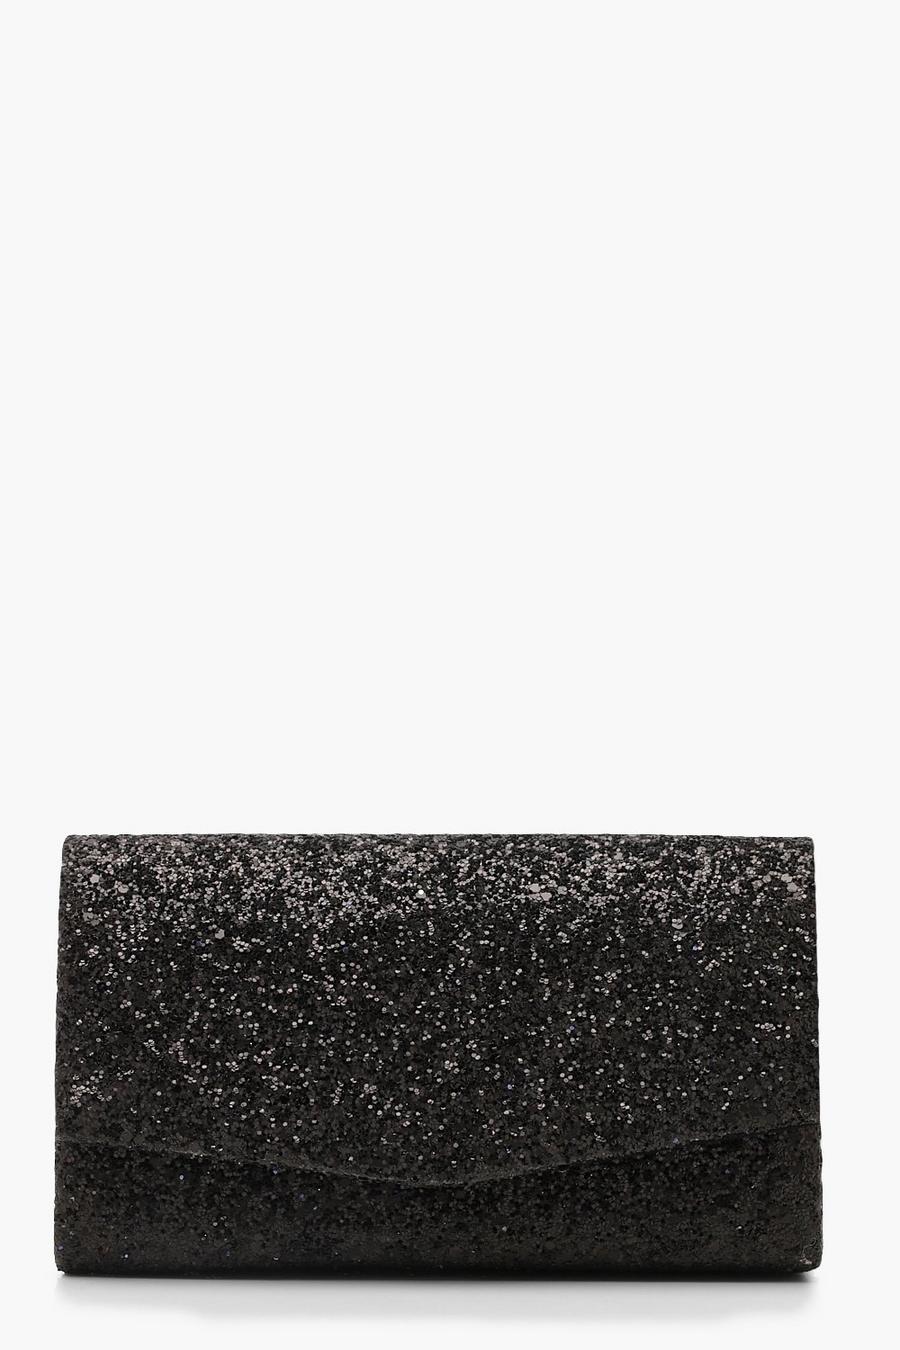 Black Glittrig kuvertväska med struktur